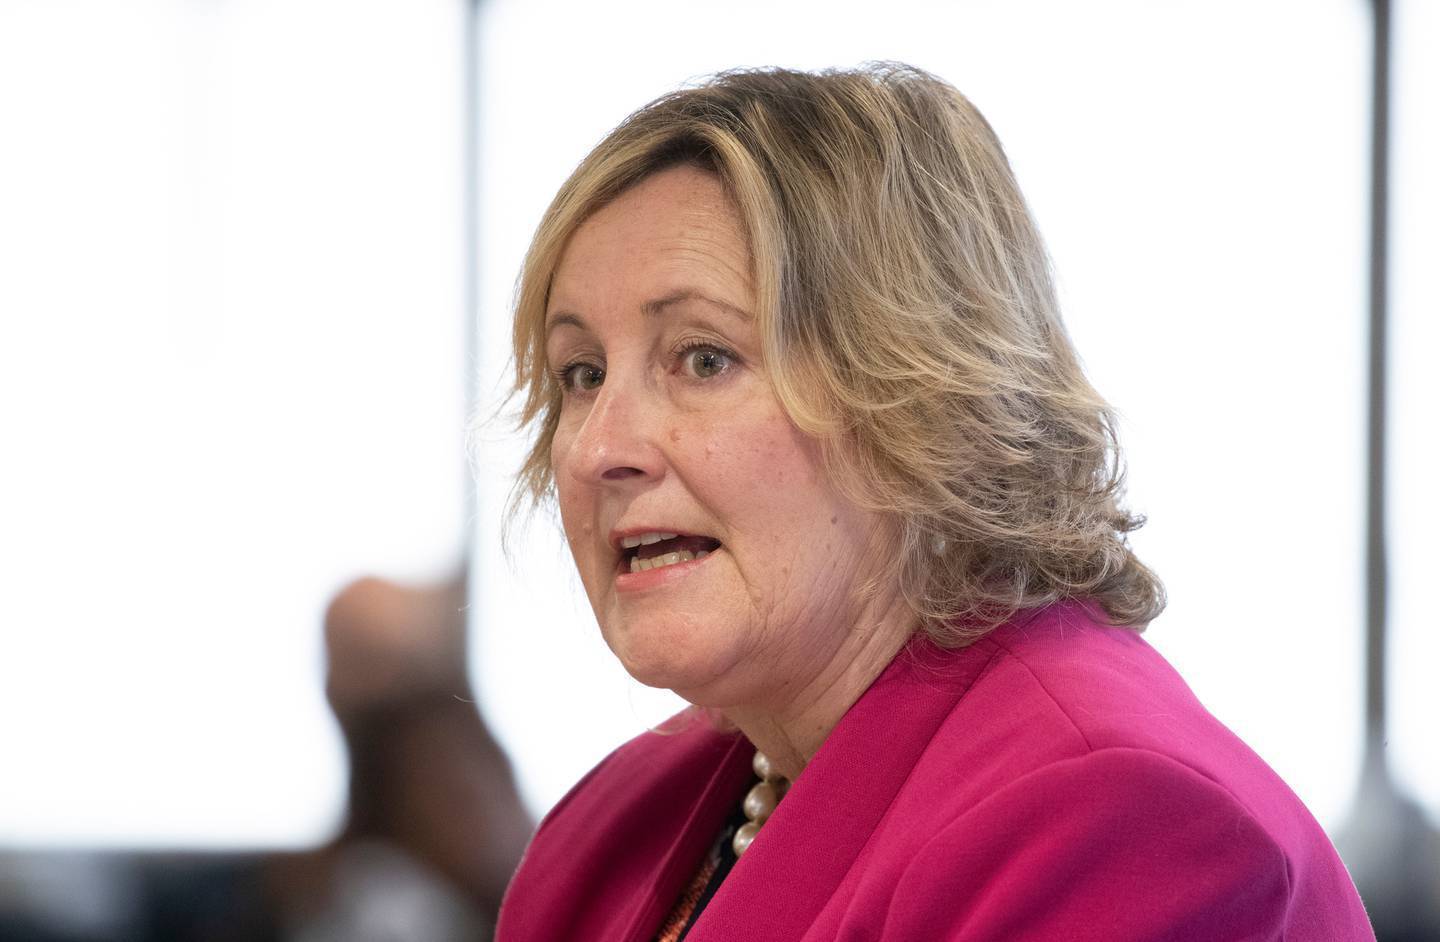 惠灵顿市议员黛安·卡尔弗特 (Diane Calvert) 表示，感觉民选议员必须拿着“乞讨碗”才能获得有关 LGWM 表现的信息。 照片/马克·米切尔